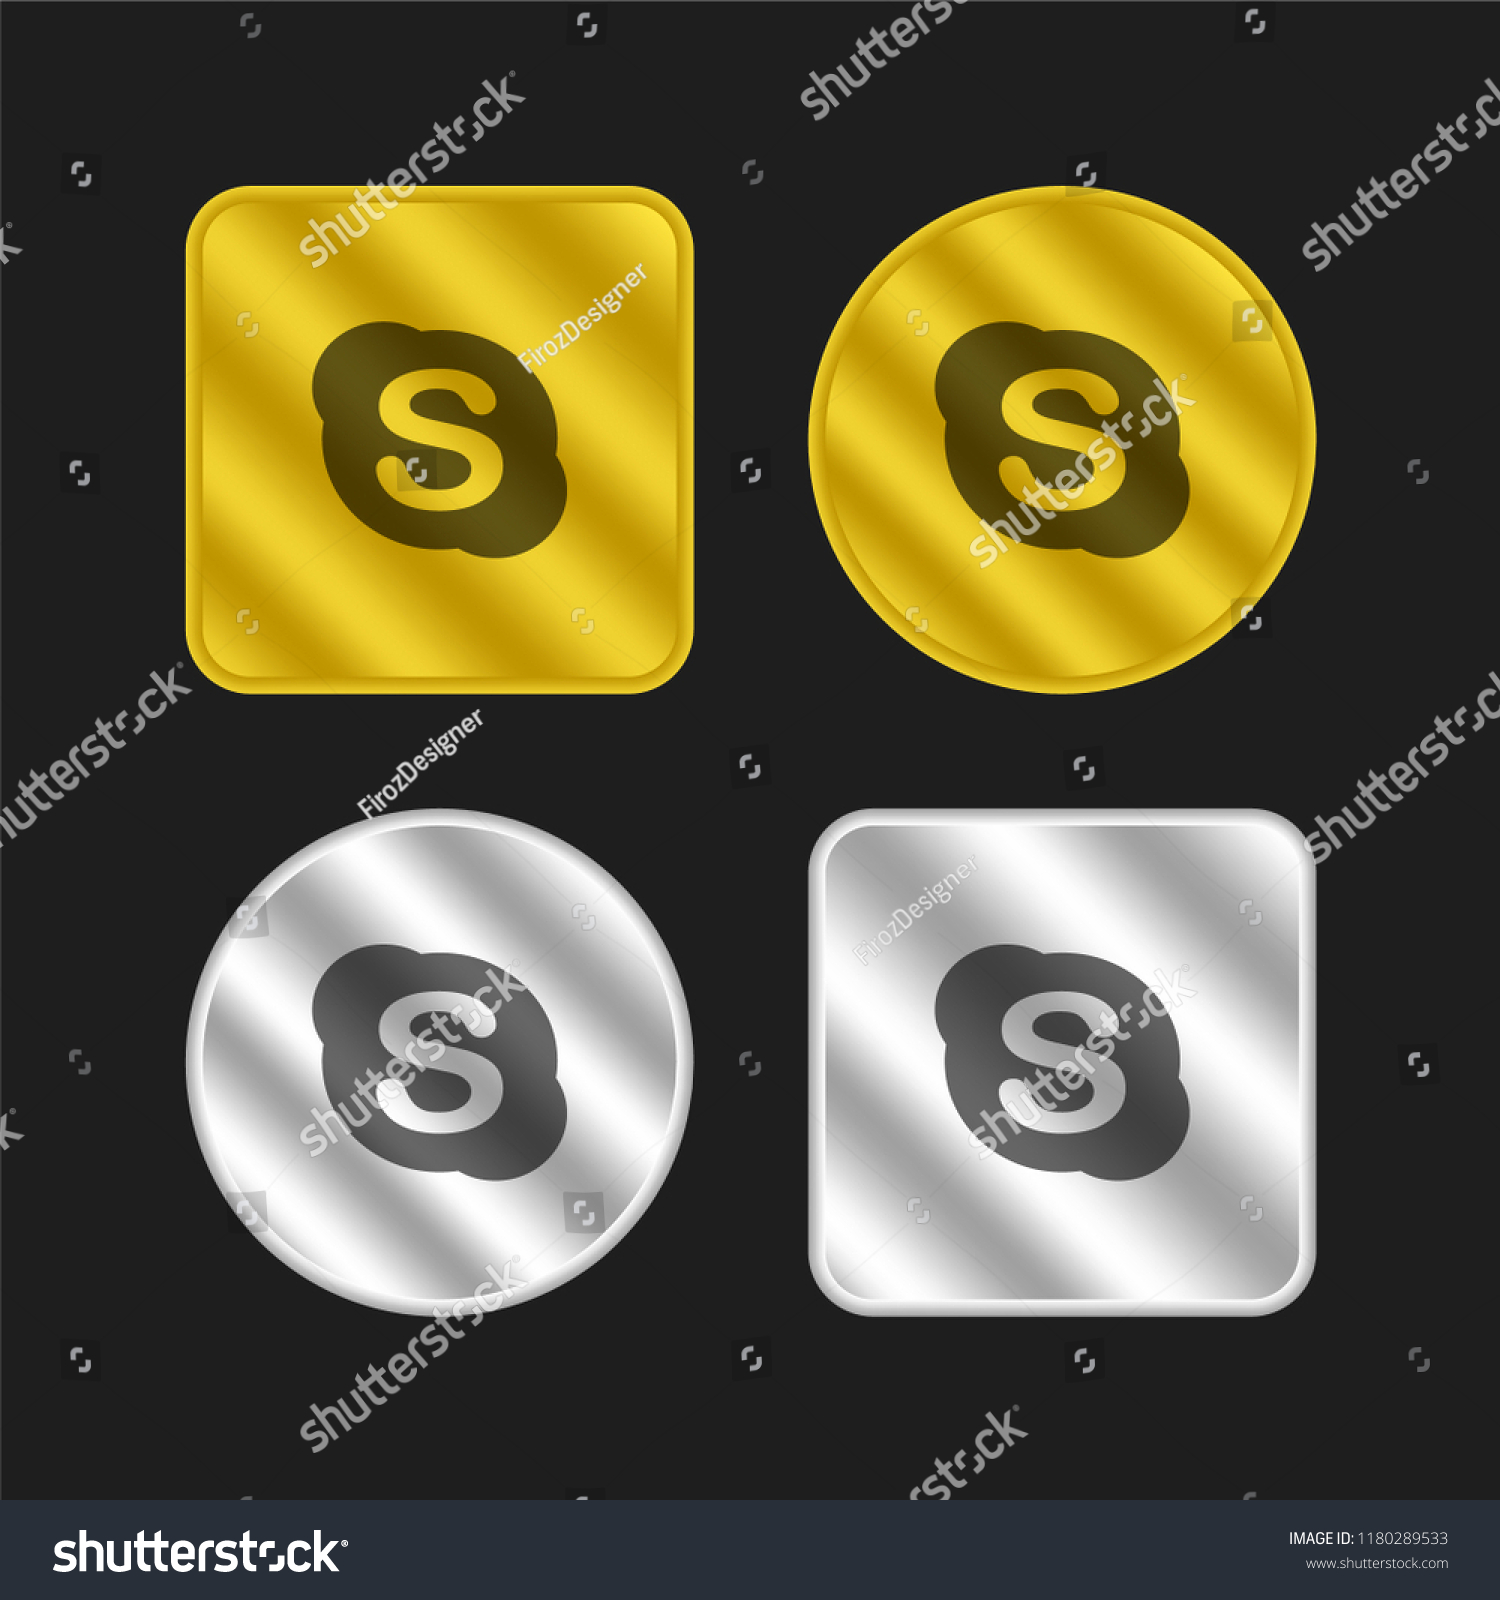 Skype gold and silver metallic coin logo icon design #1180289533